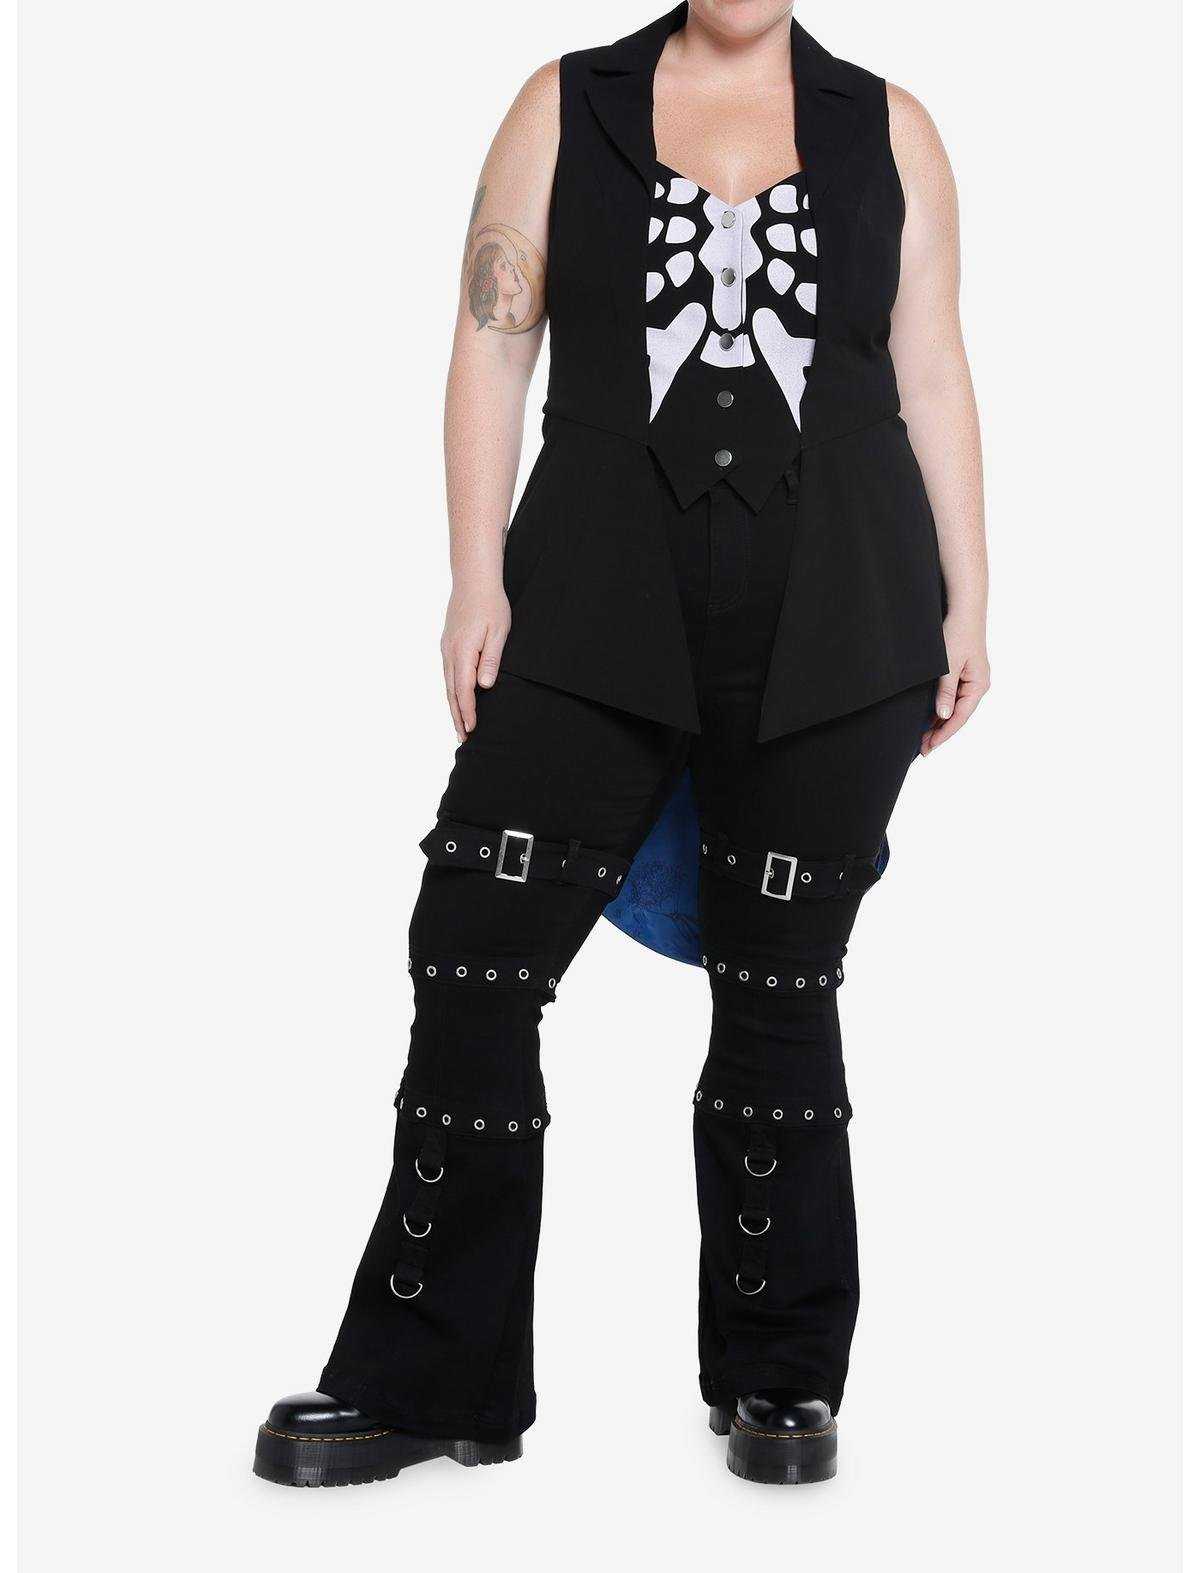 Corpse Bride Skeleton Hi-Low Waistcoat Vest Plus Size, , hi-res